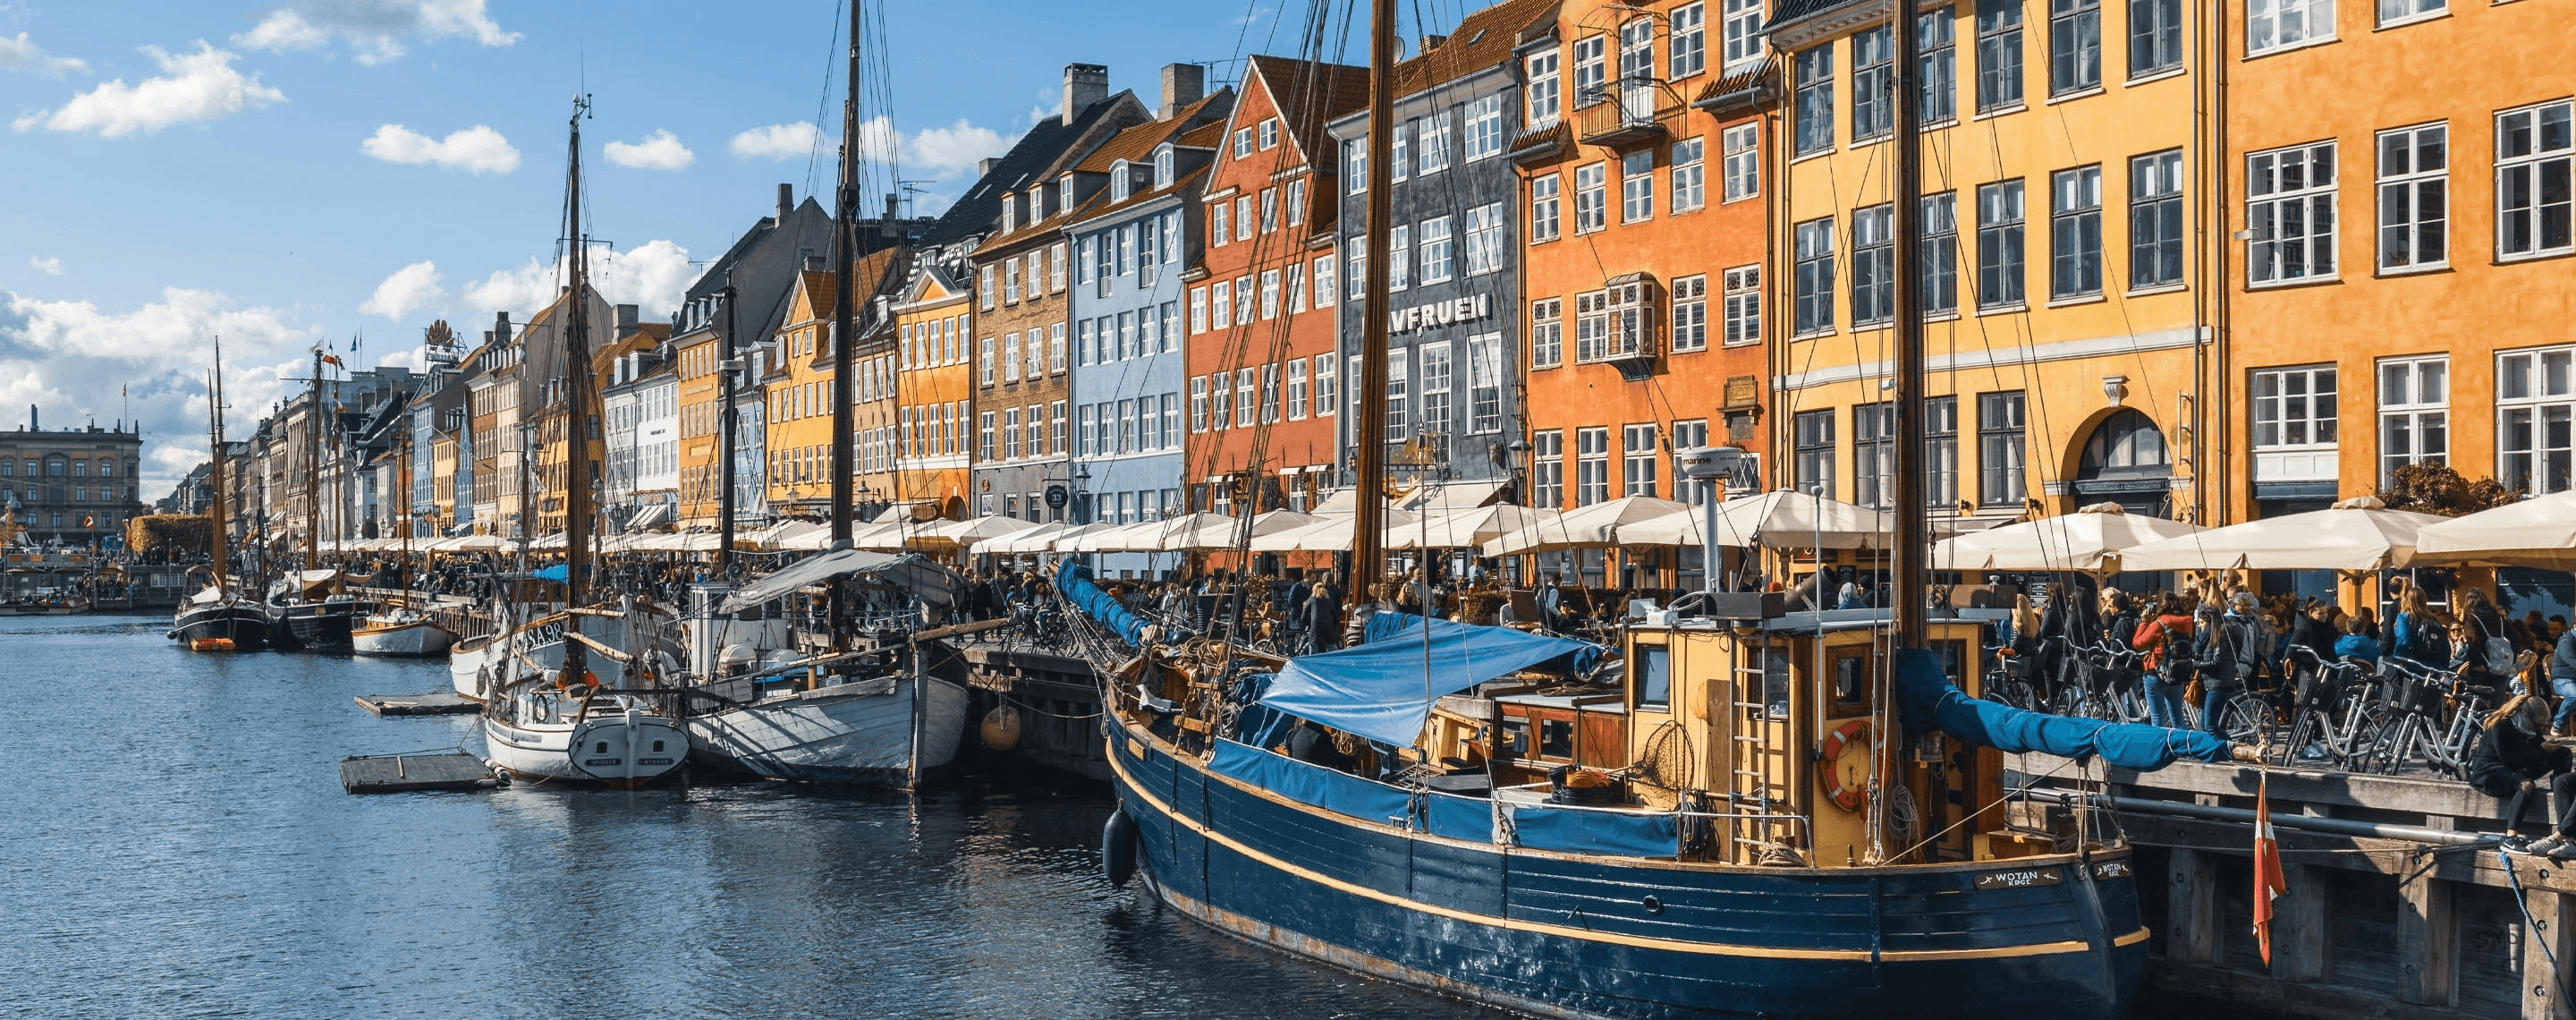 Kanal in Kopenhagen, Dänemark